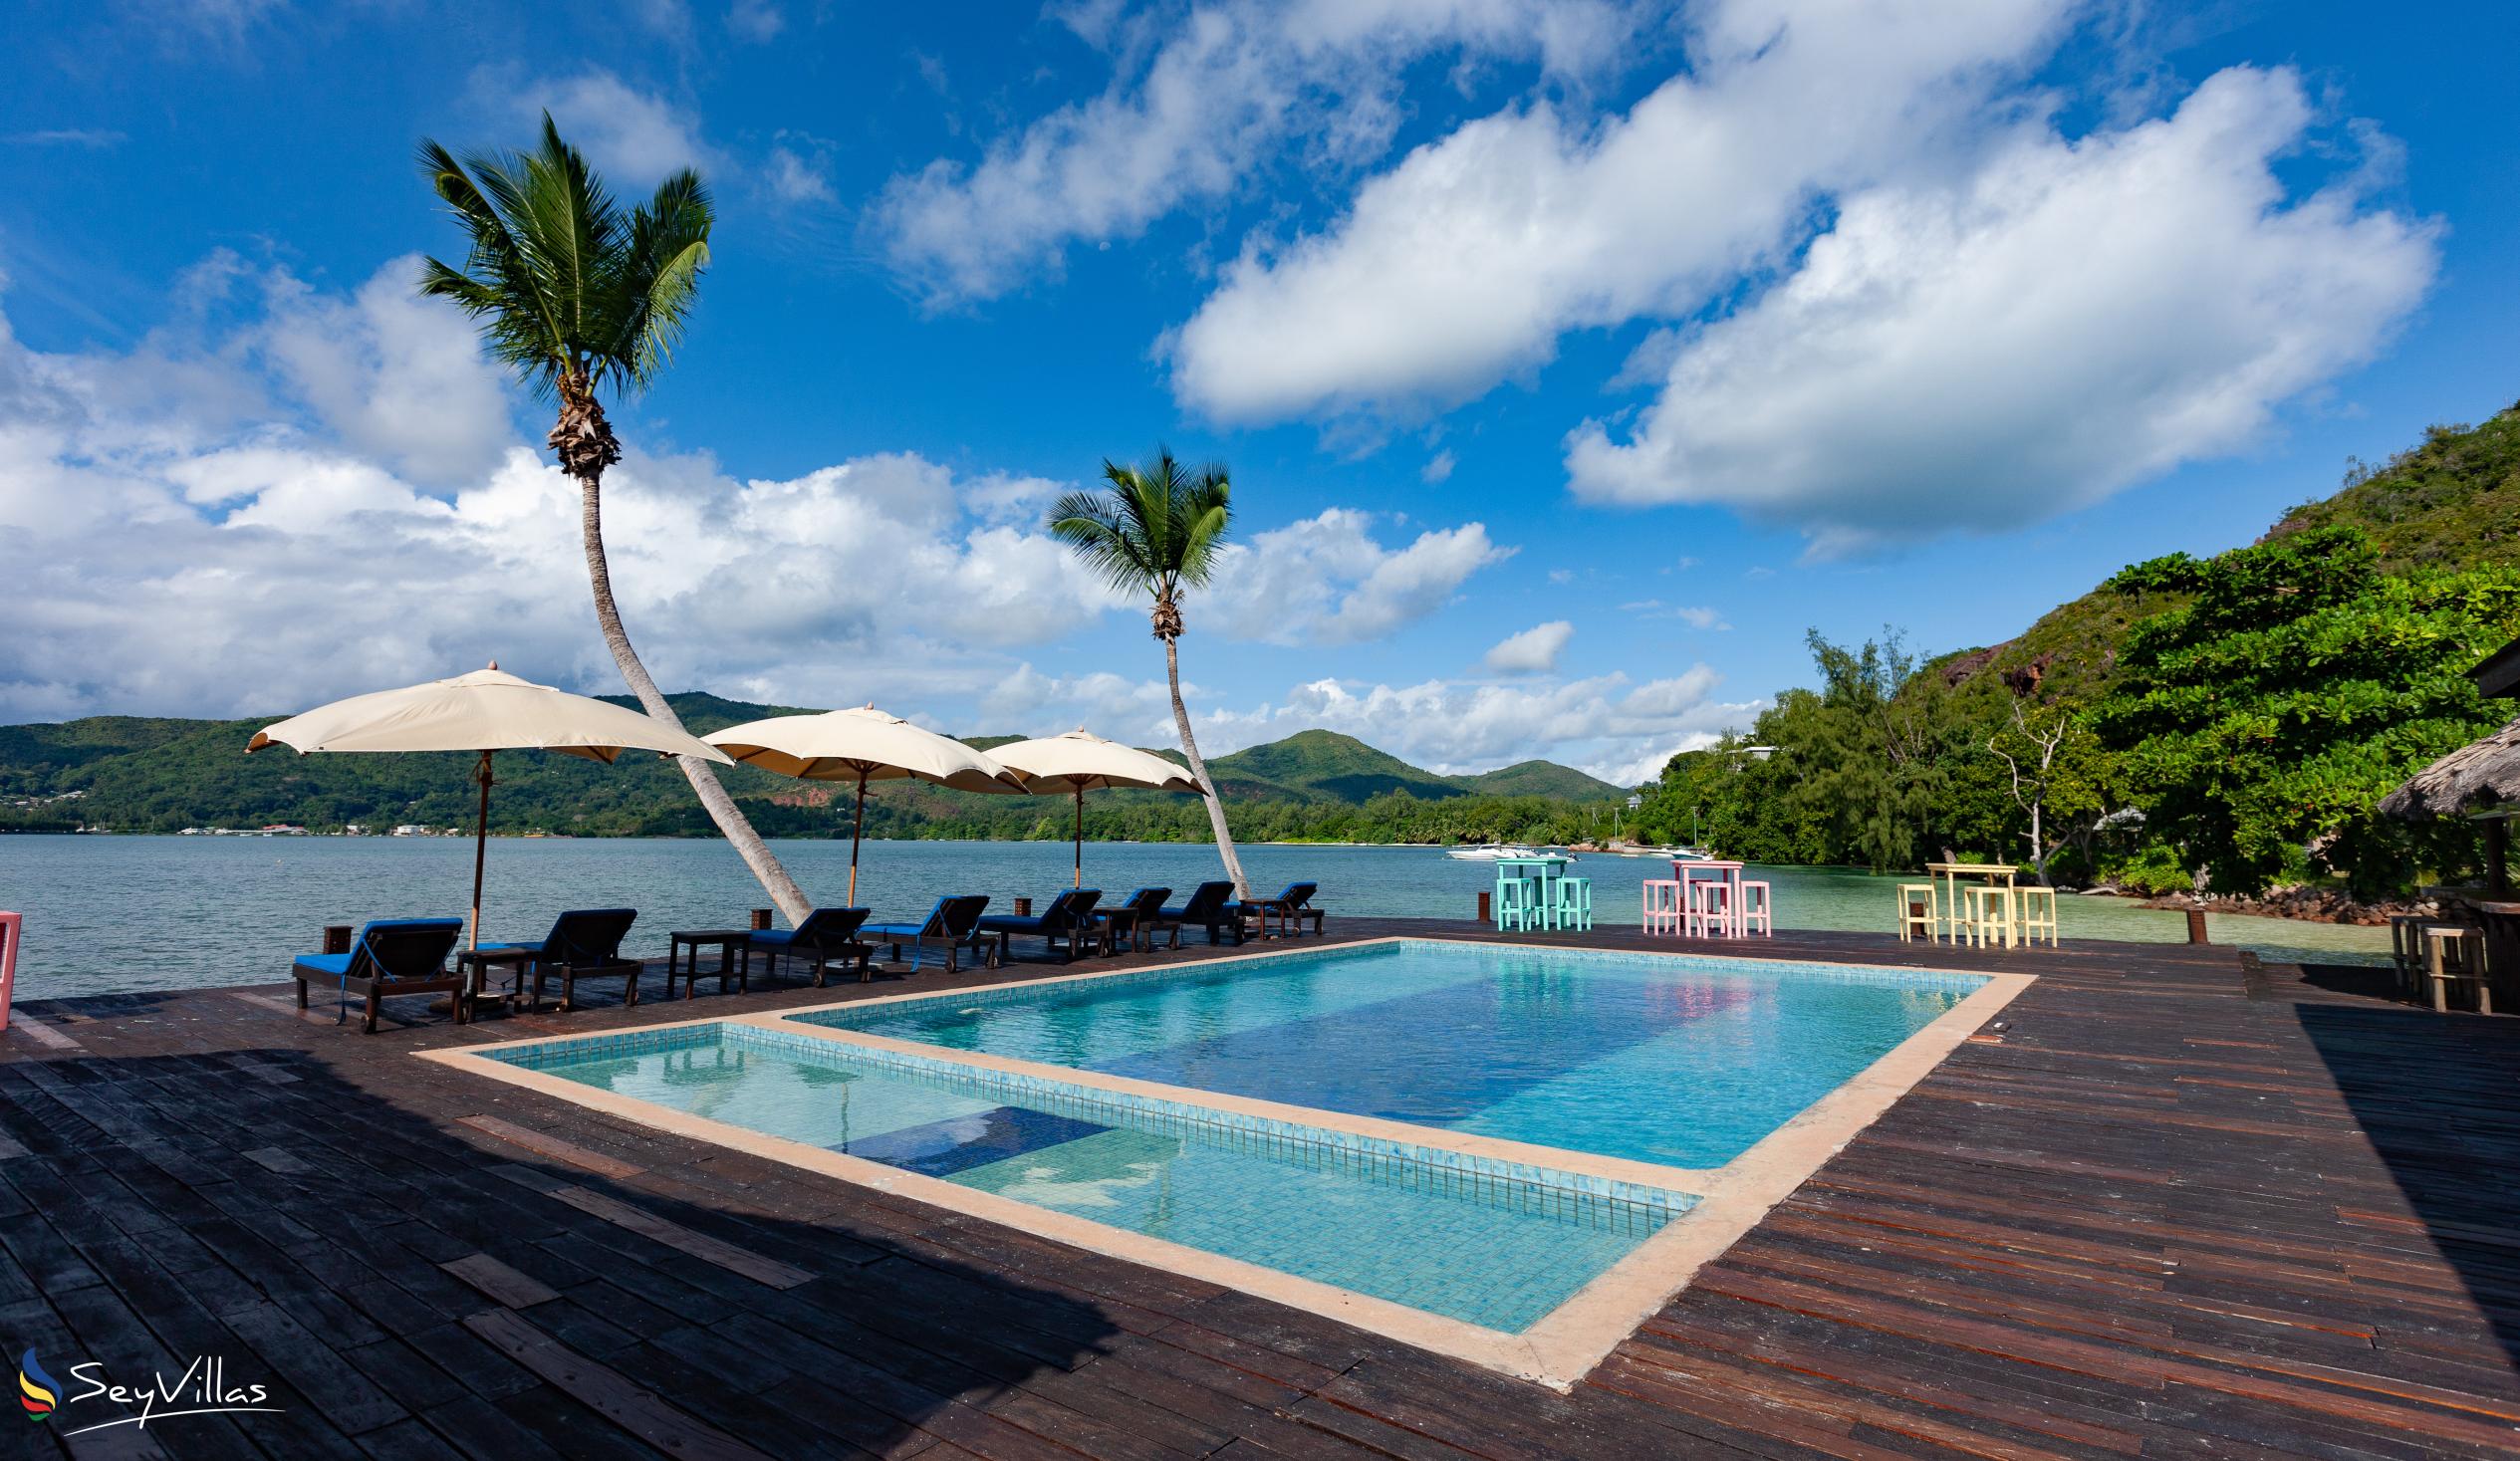 Photo 2: Le Vasseur La Buse Eco Resort - Outdoor area - Praslin (Seychelles)